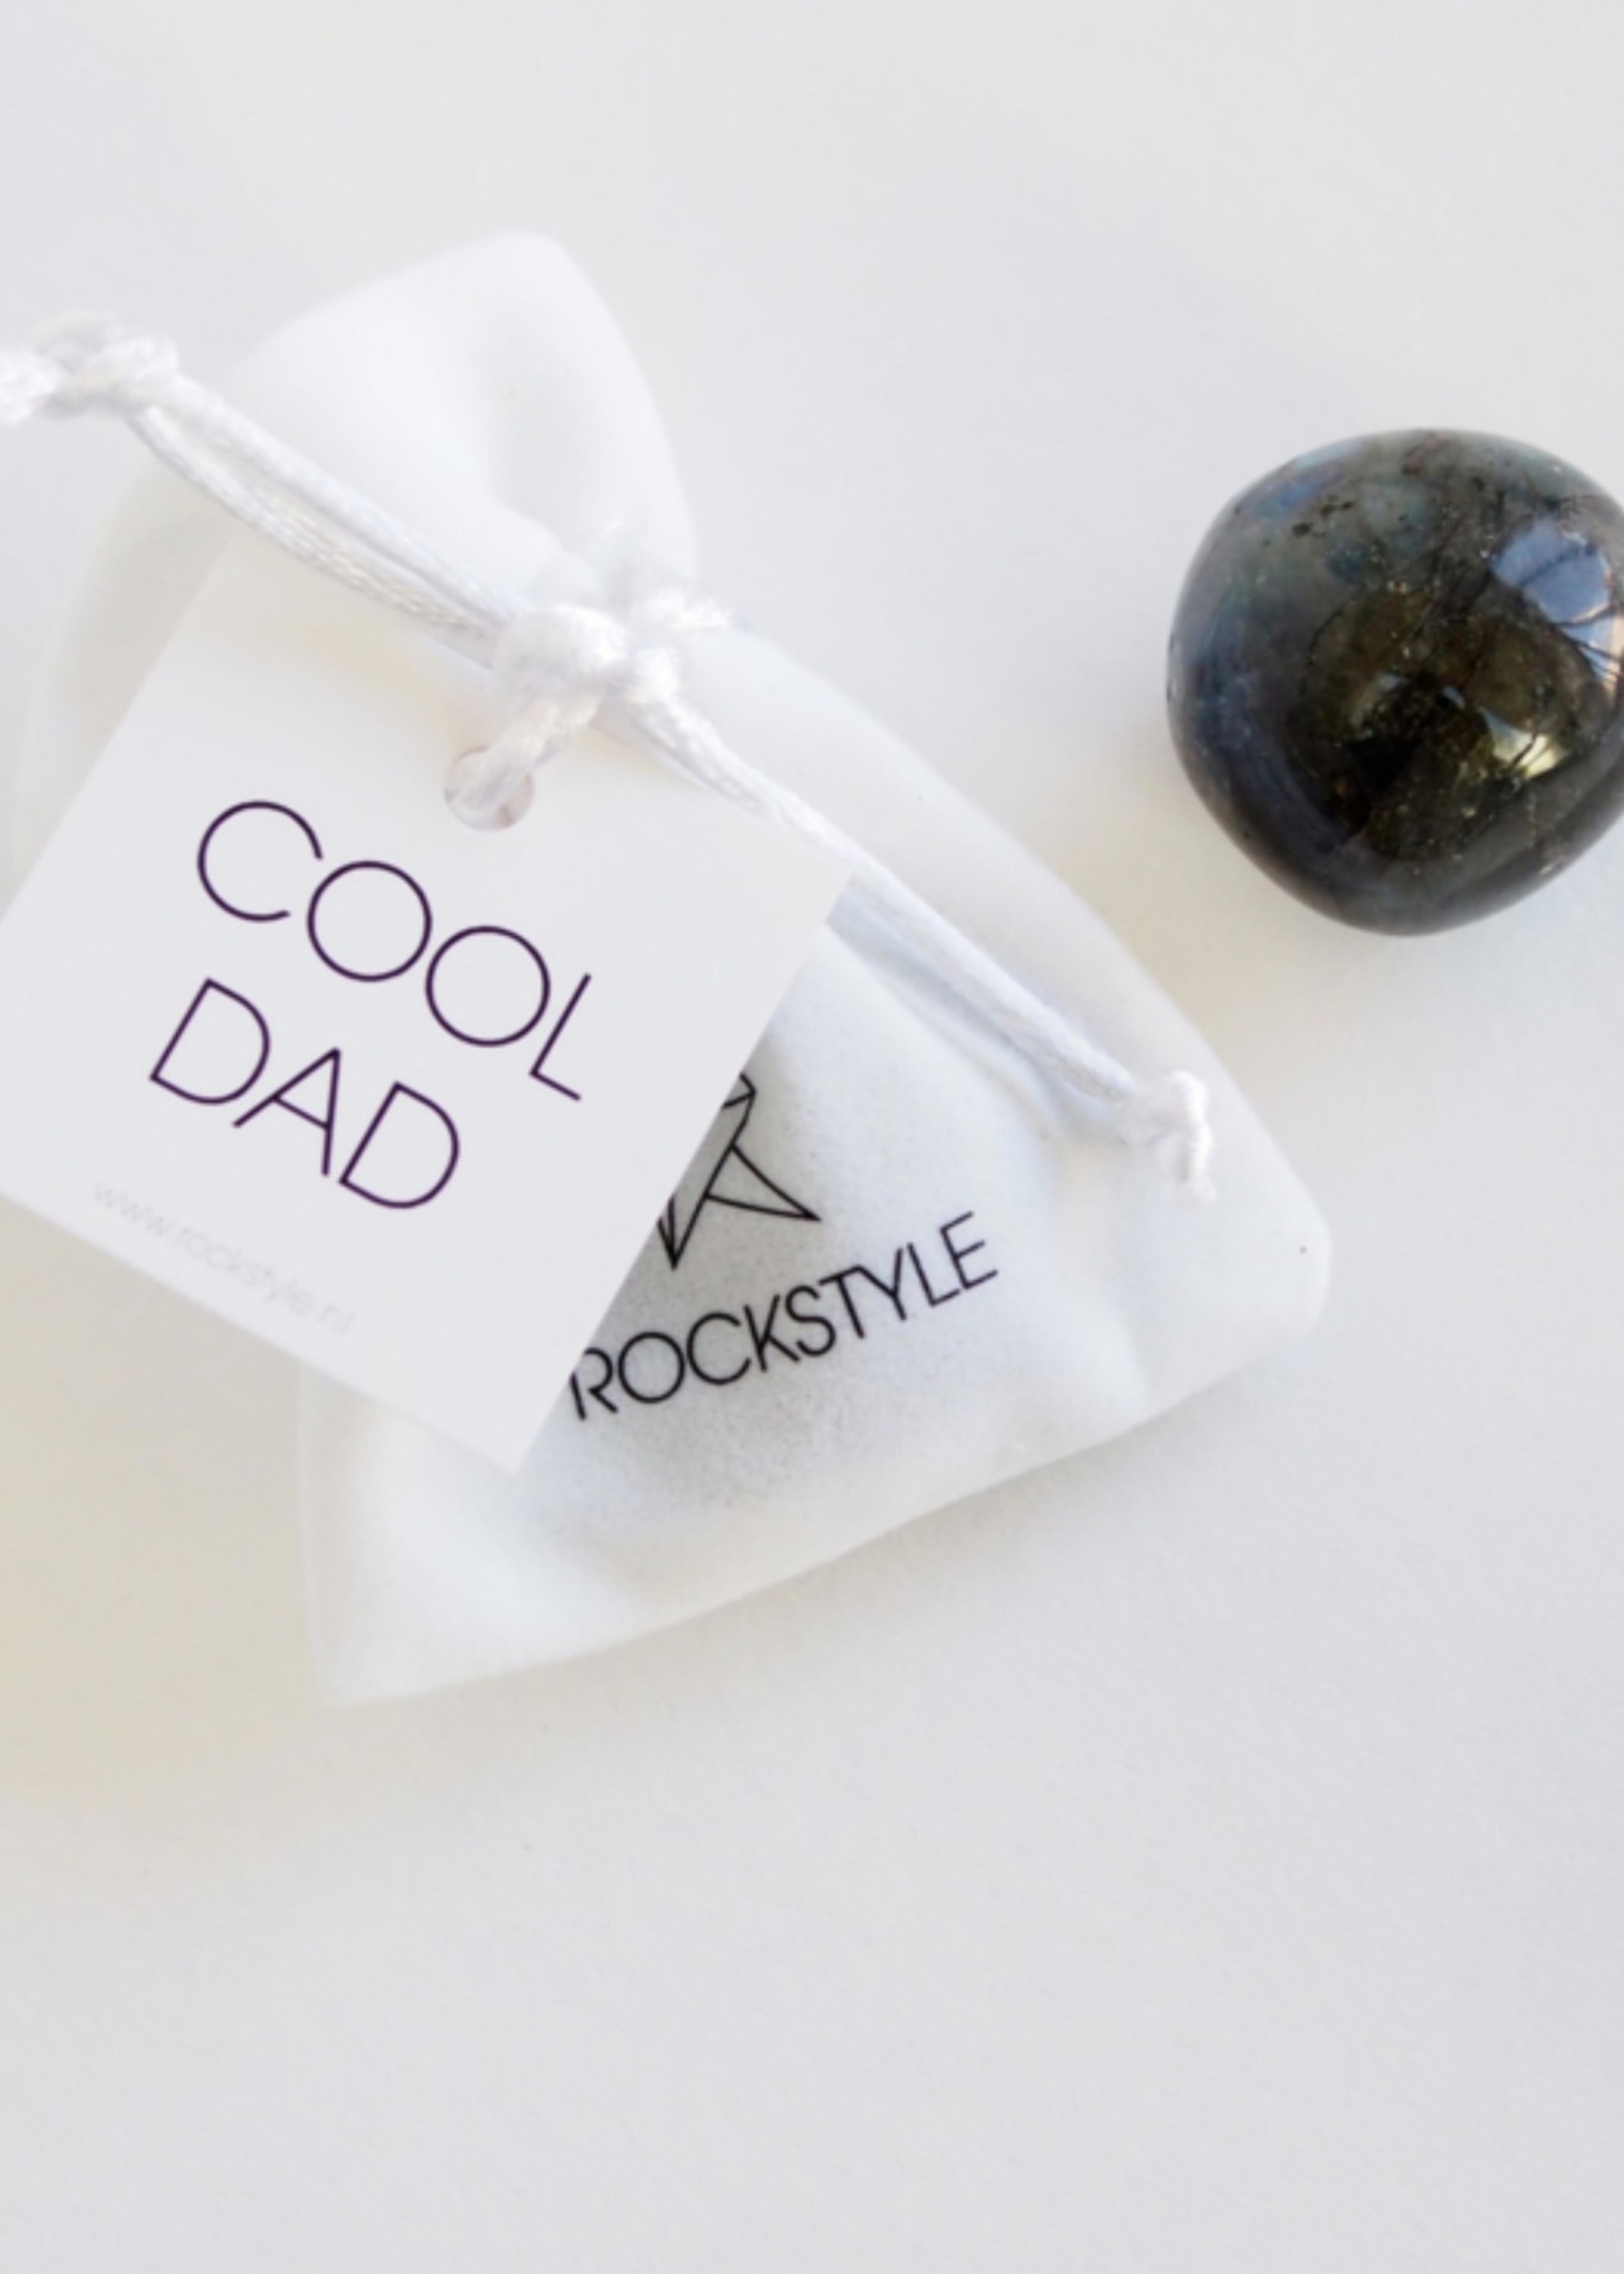 Rockstyle Labradoriet giftbag Cool Dad